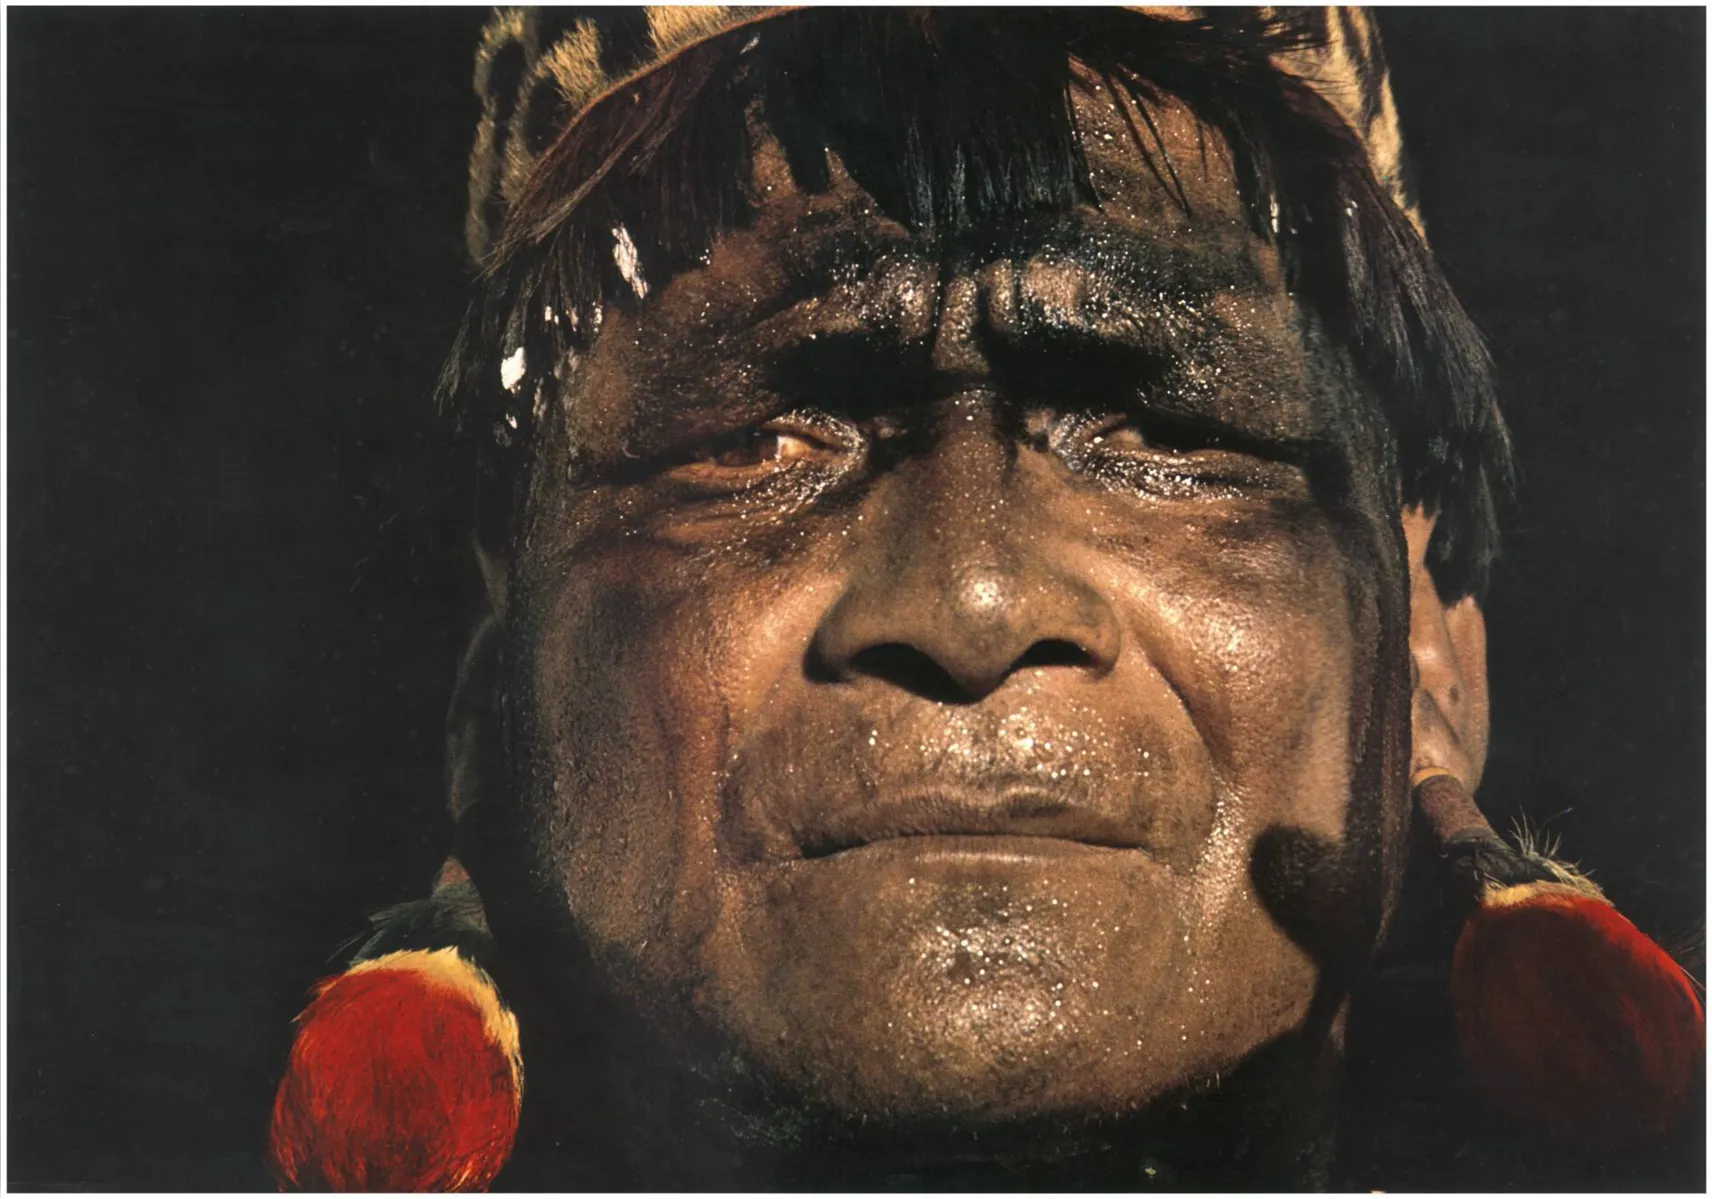 Exposição de Lucio Kodato traz fotos que mostram os costumes e tradições da aldeia Mehinaku, do Alto Xingu (MT)